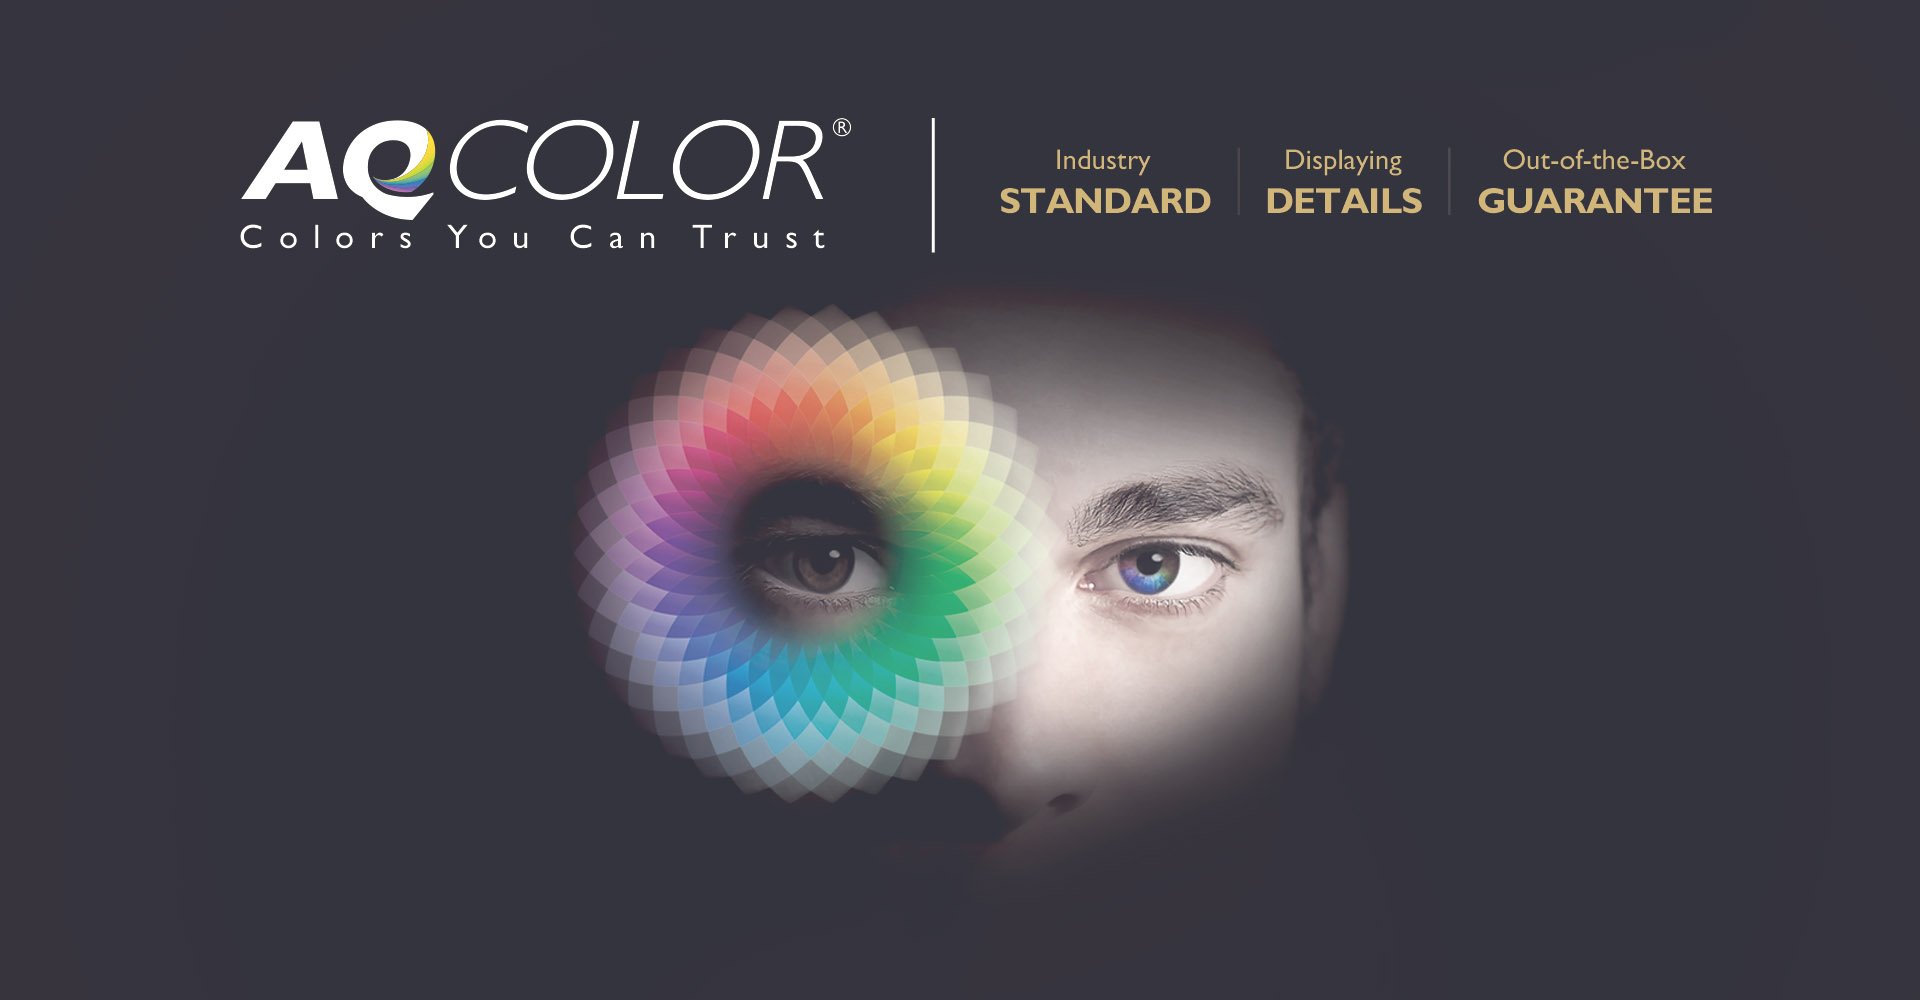 BenQ AQCOLOR-Technologie schafft neue Dimensionen in der Fotobearbeitung und maximale Farbpräzision für lebensechte Farben. 